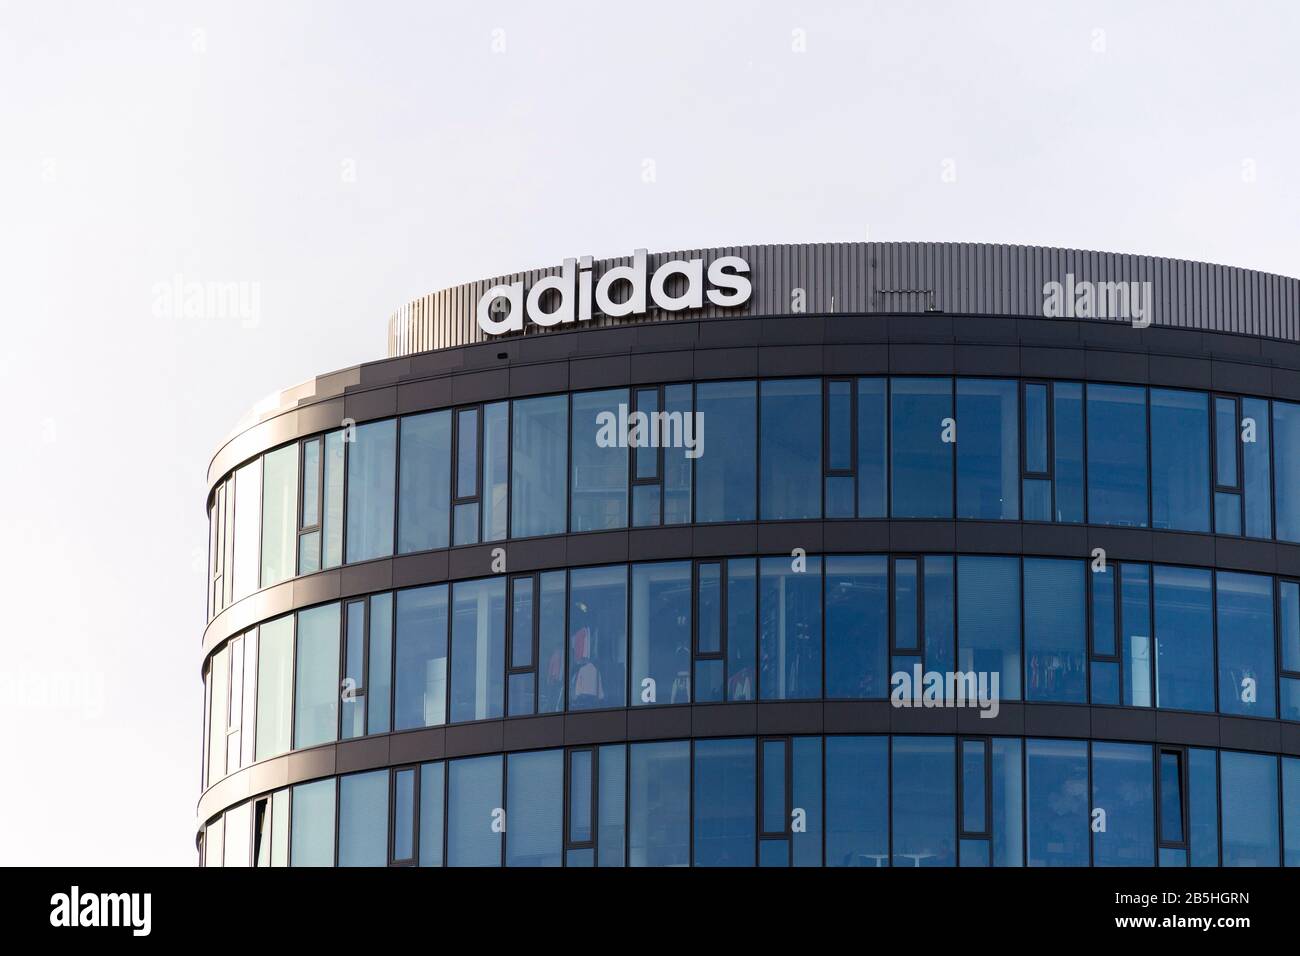 Prag, TSCHECHIEN - 5. MÄRZ 2020: Sportbekleidungshersteller Adidas Firmenlogo auf dem Hauptsitz am 5. März 2020 in Prag, Tschechien, aufgebaut Stockfoto